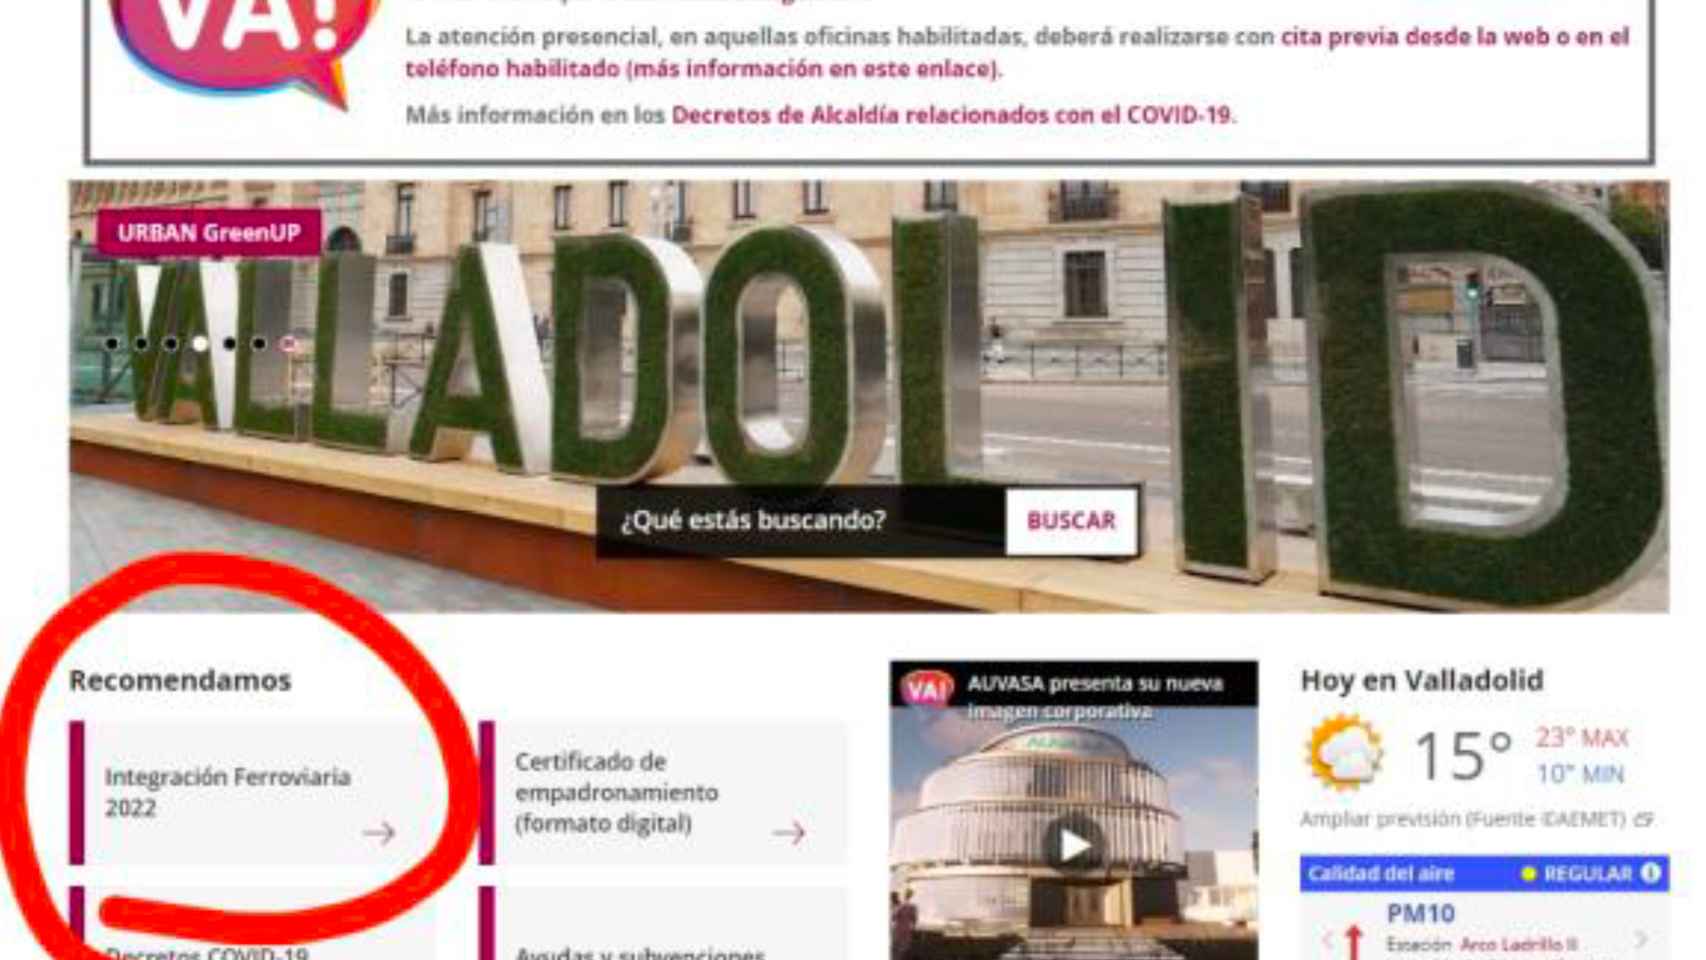 Detalle del acceso al visor en la web del Ayuntamiento de Valladolid